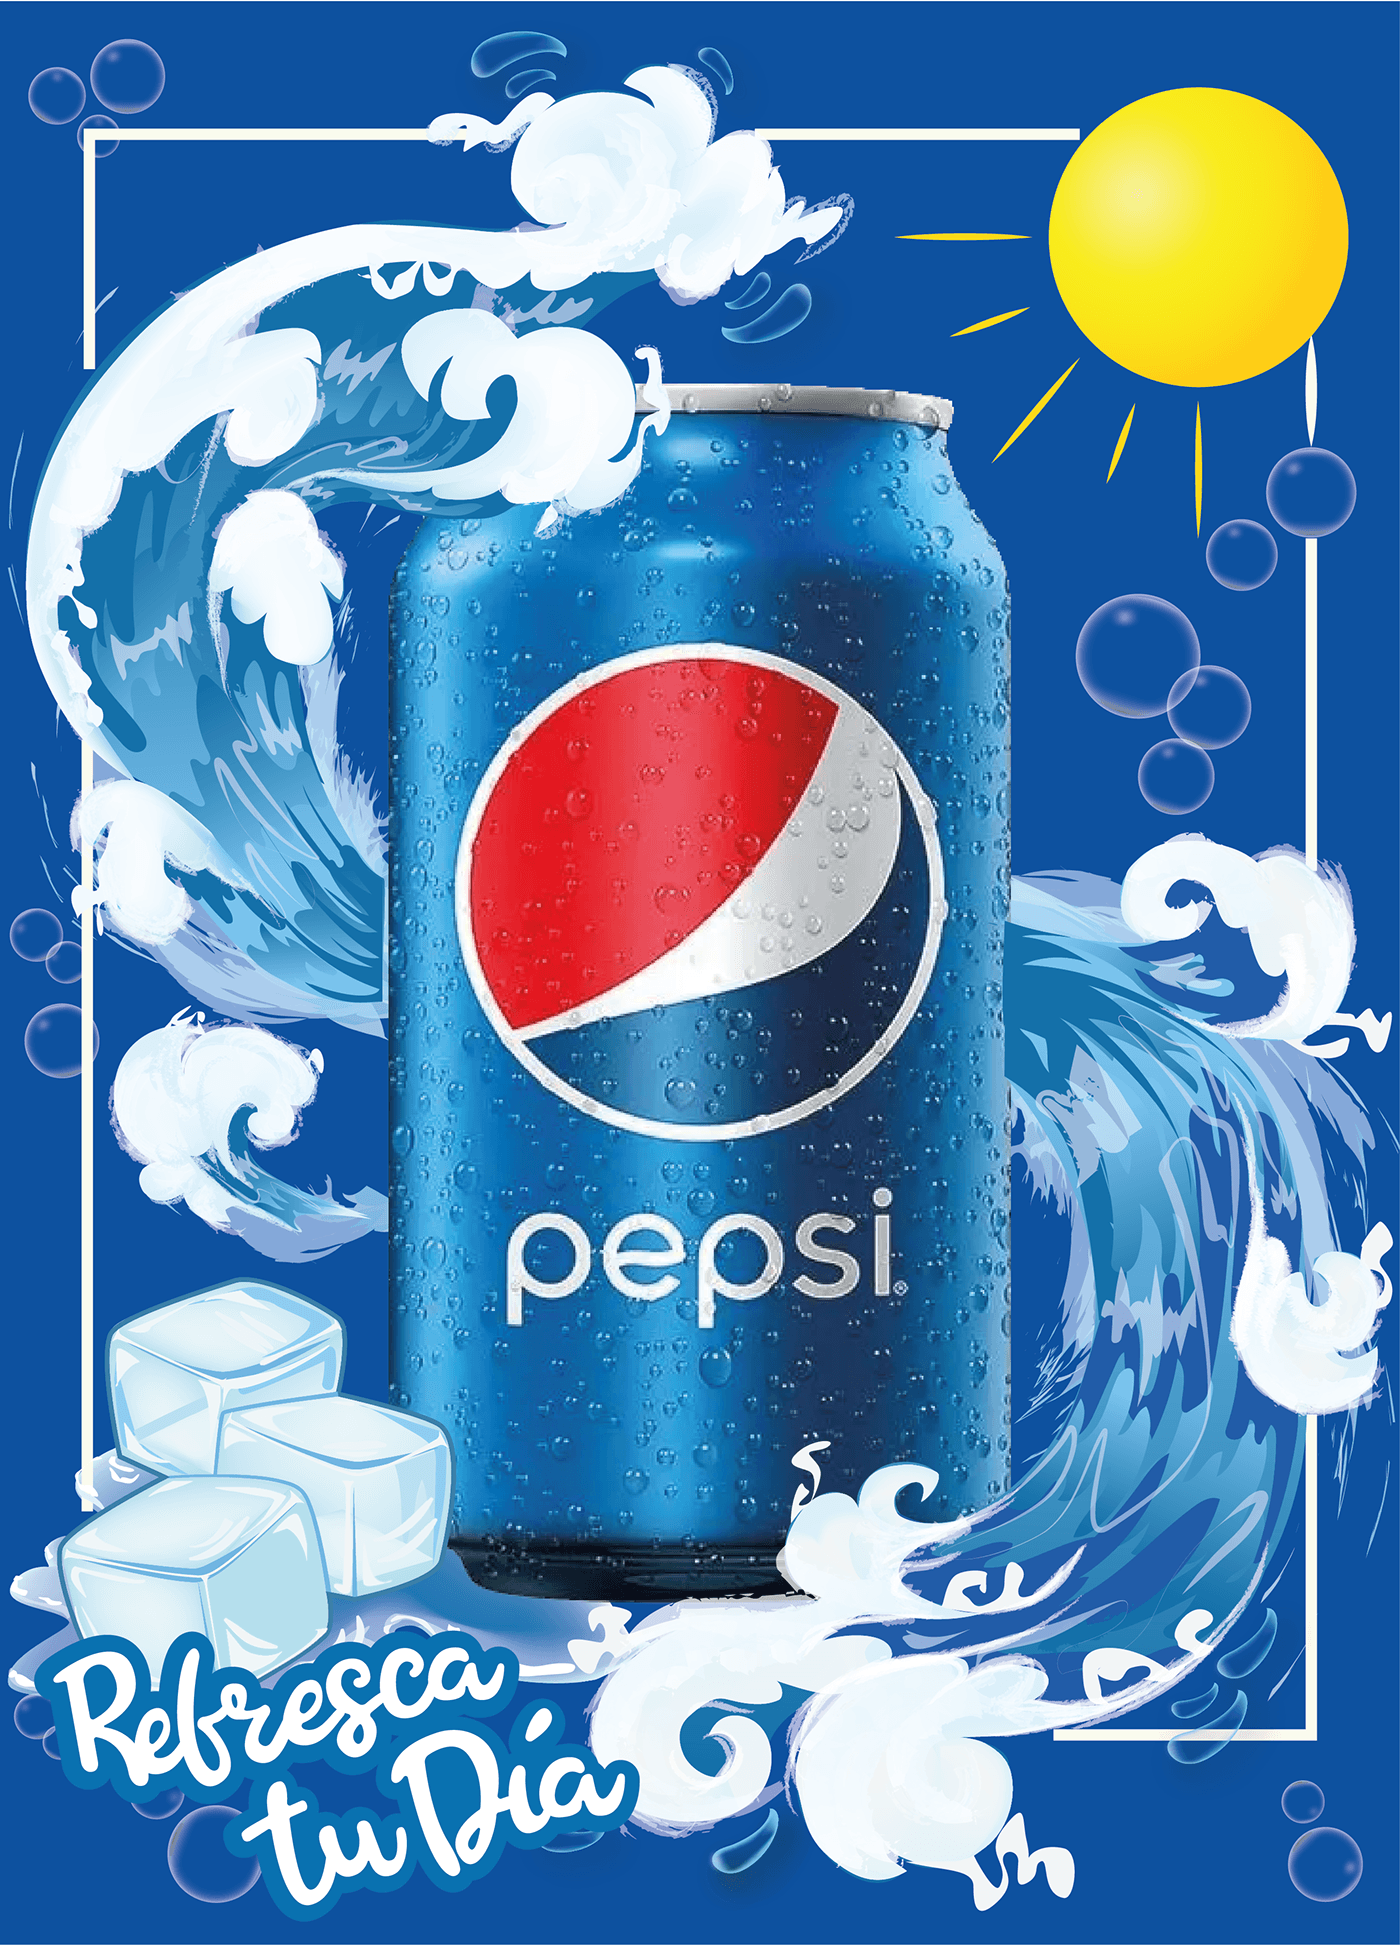 pepsi pepsico marketing   adobe illustrator publicidad diseño gráfico marca pepsi cola soda design